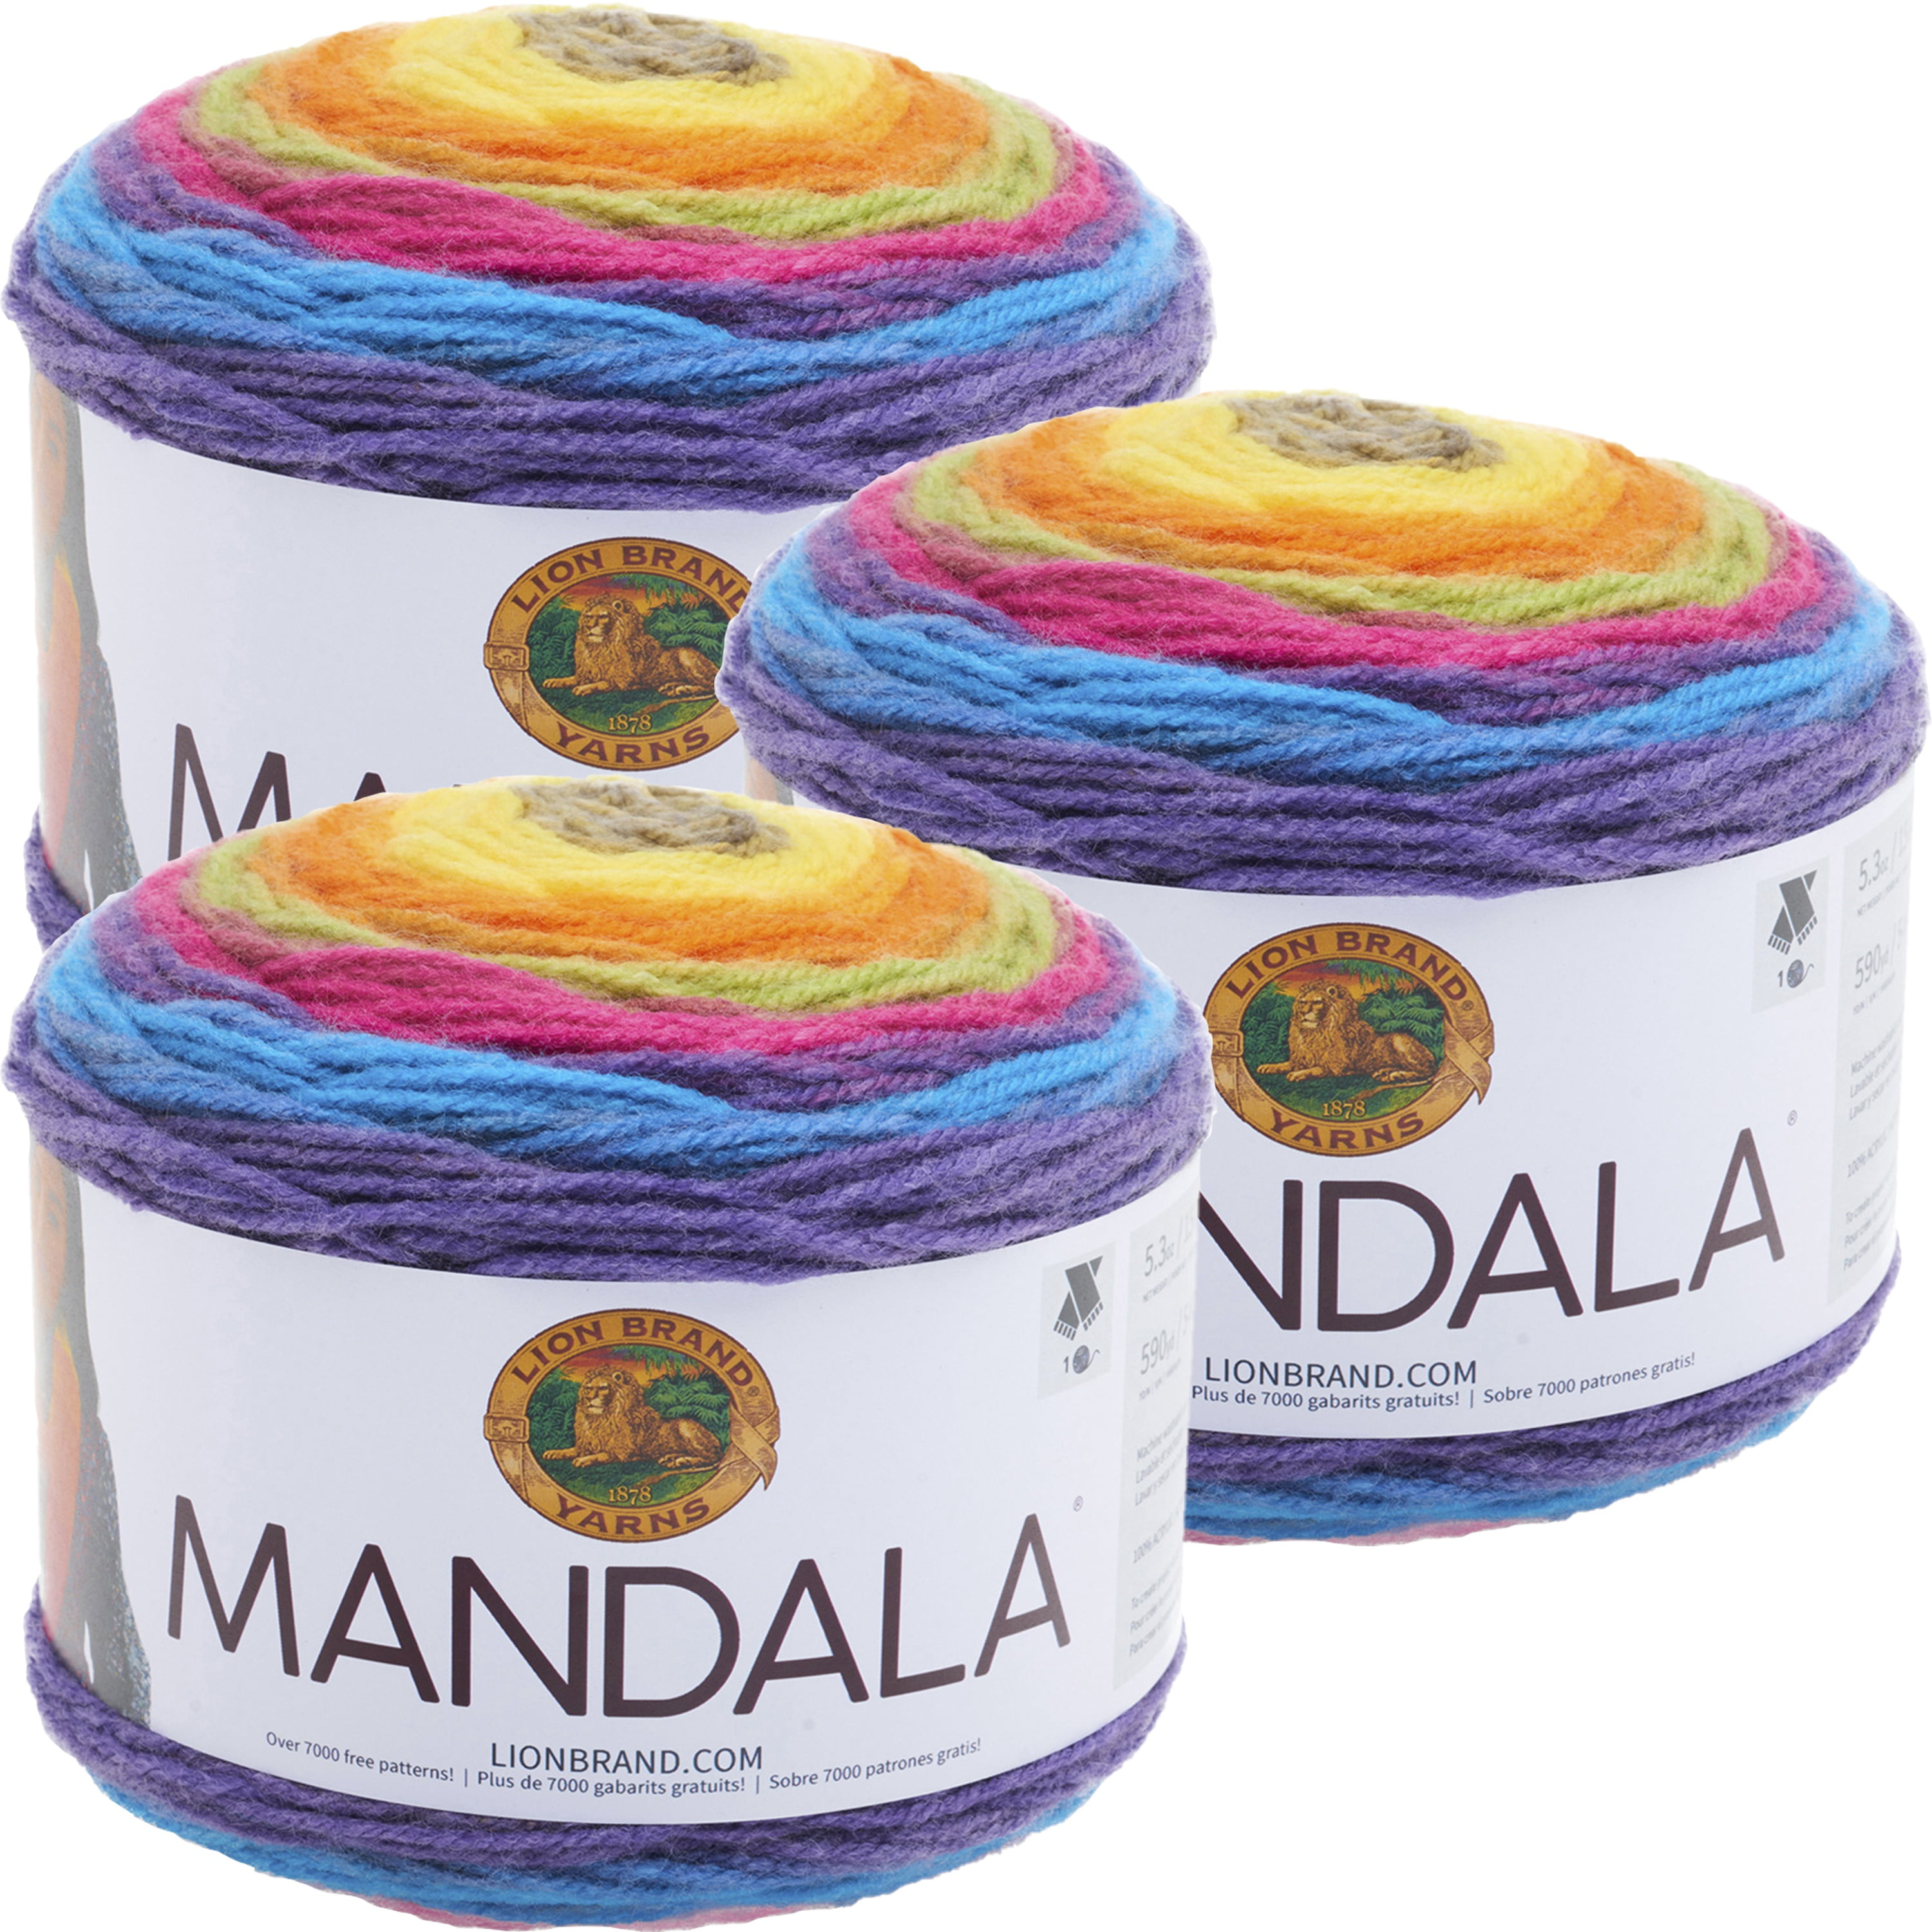 Lion Brand Yarn lion brand yarn mandala yarn, multicolor yarn for  crocheting and knitting, craft yarn, 3-pack, centaur